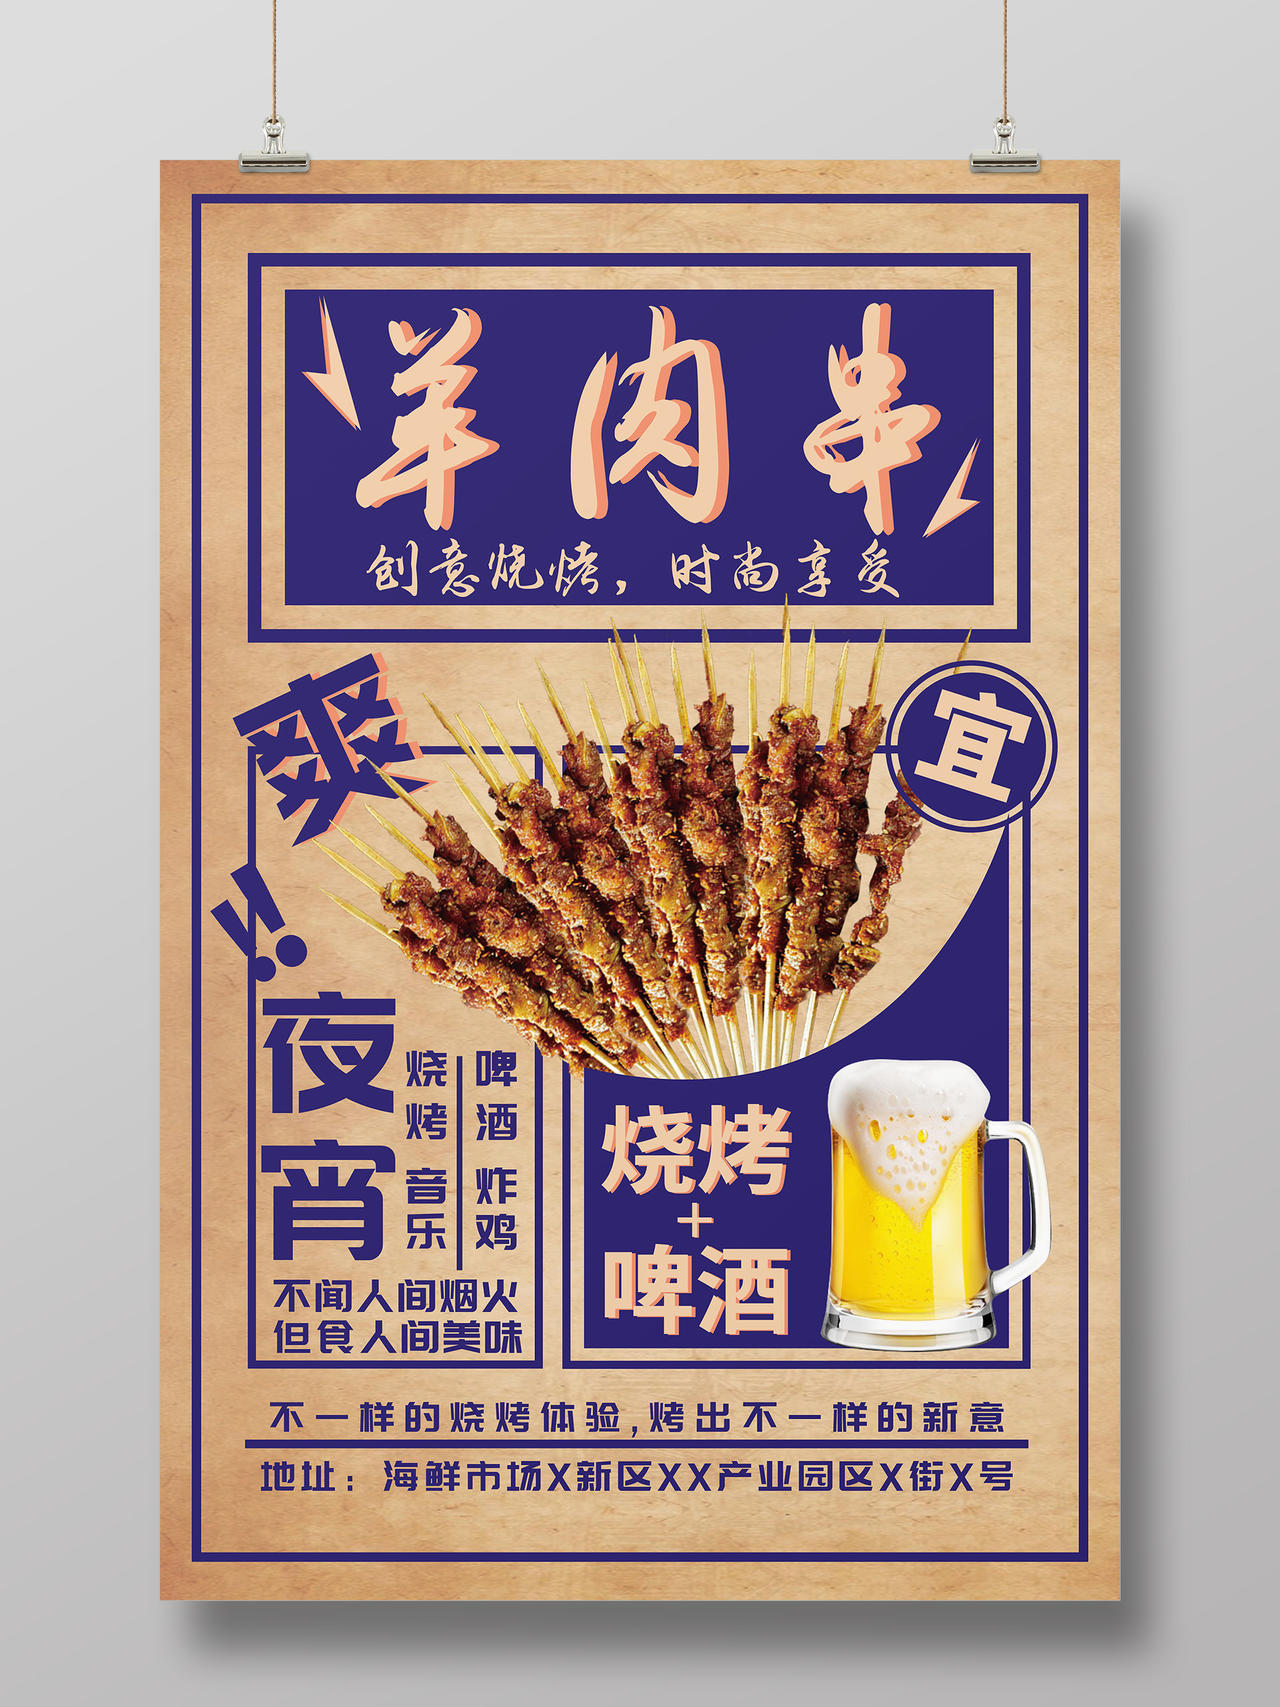 中华传统美食新疆美食烧烤羊肉串海报